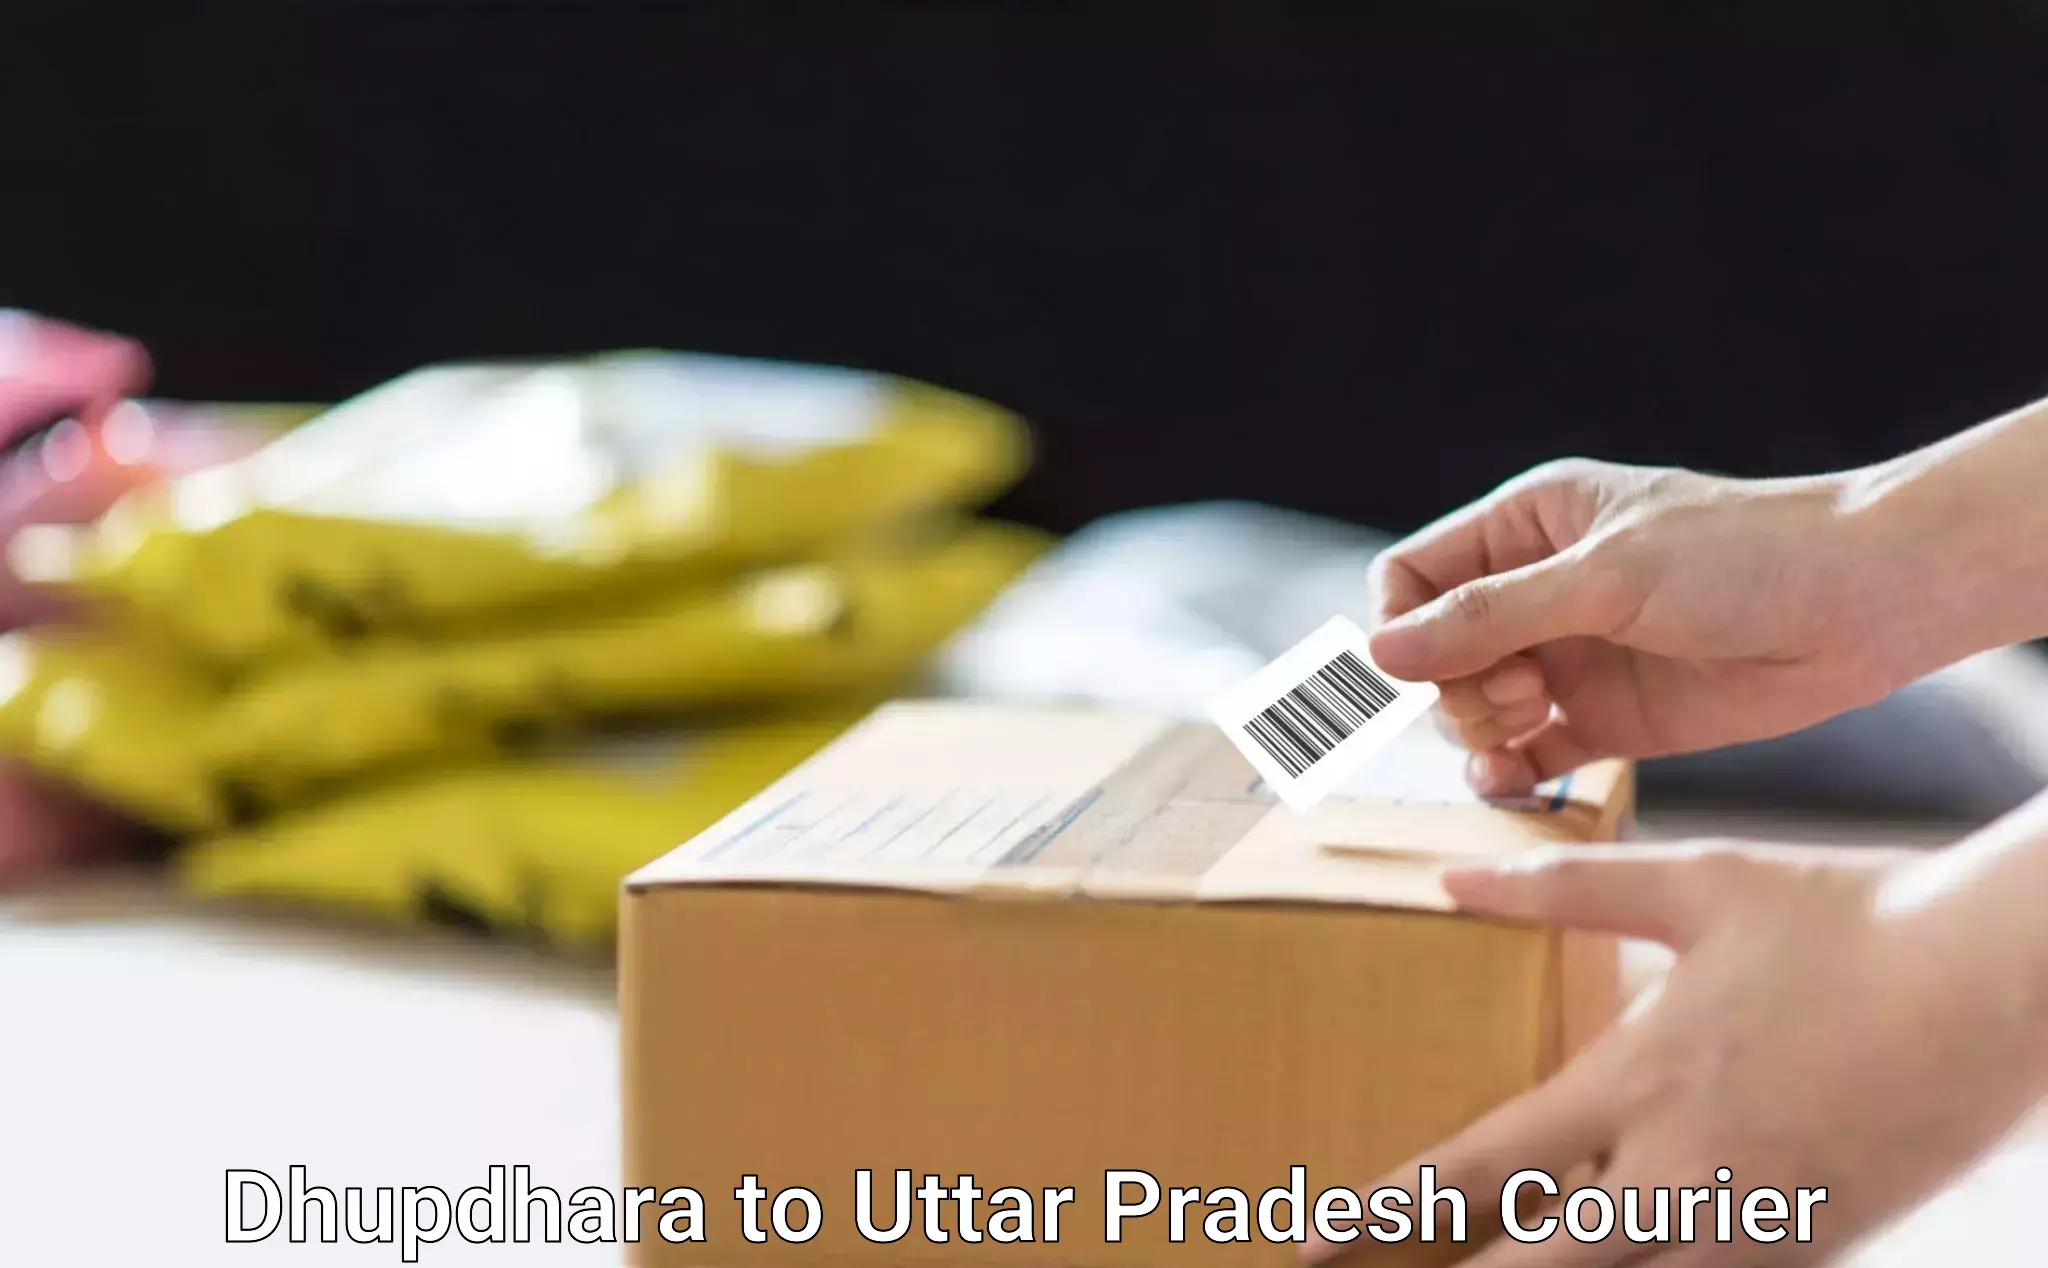 Efficient parcel tracking in Dhupdhara to Sant Ravidas Nagar